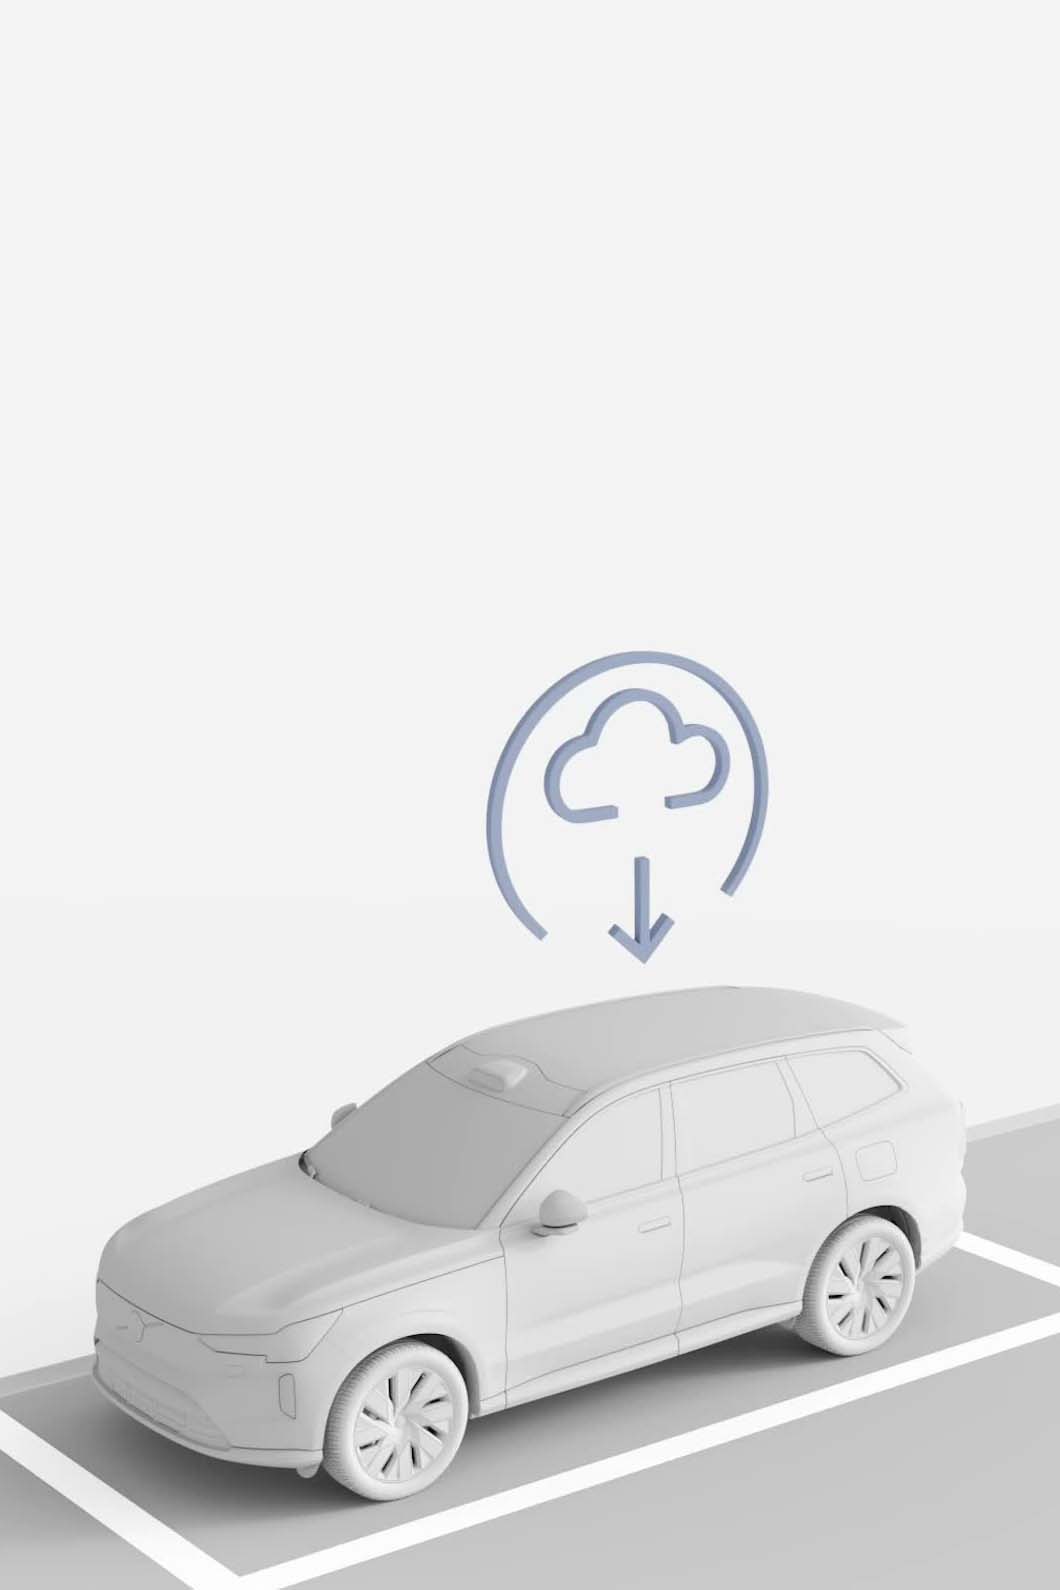 Illustratie van een Volvo die een software-update ontvangt via de cloud.